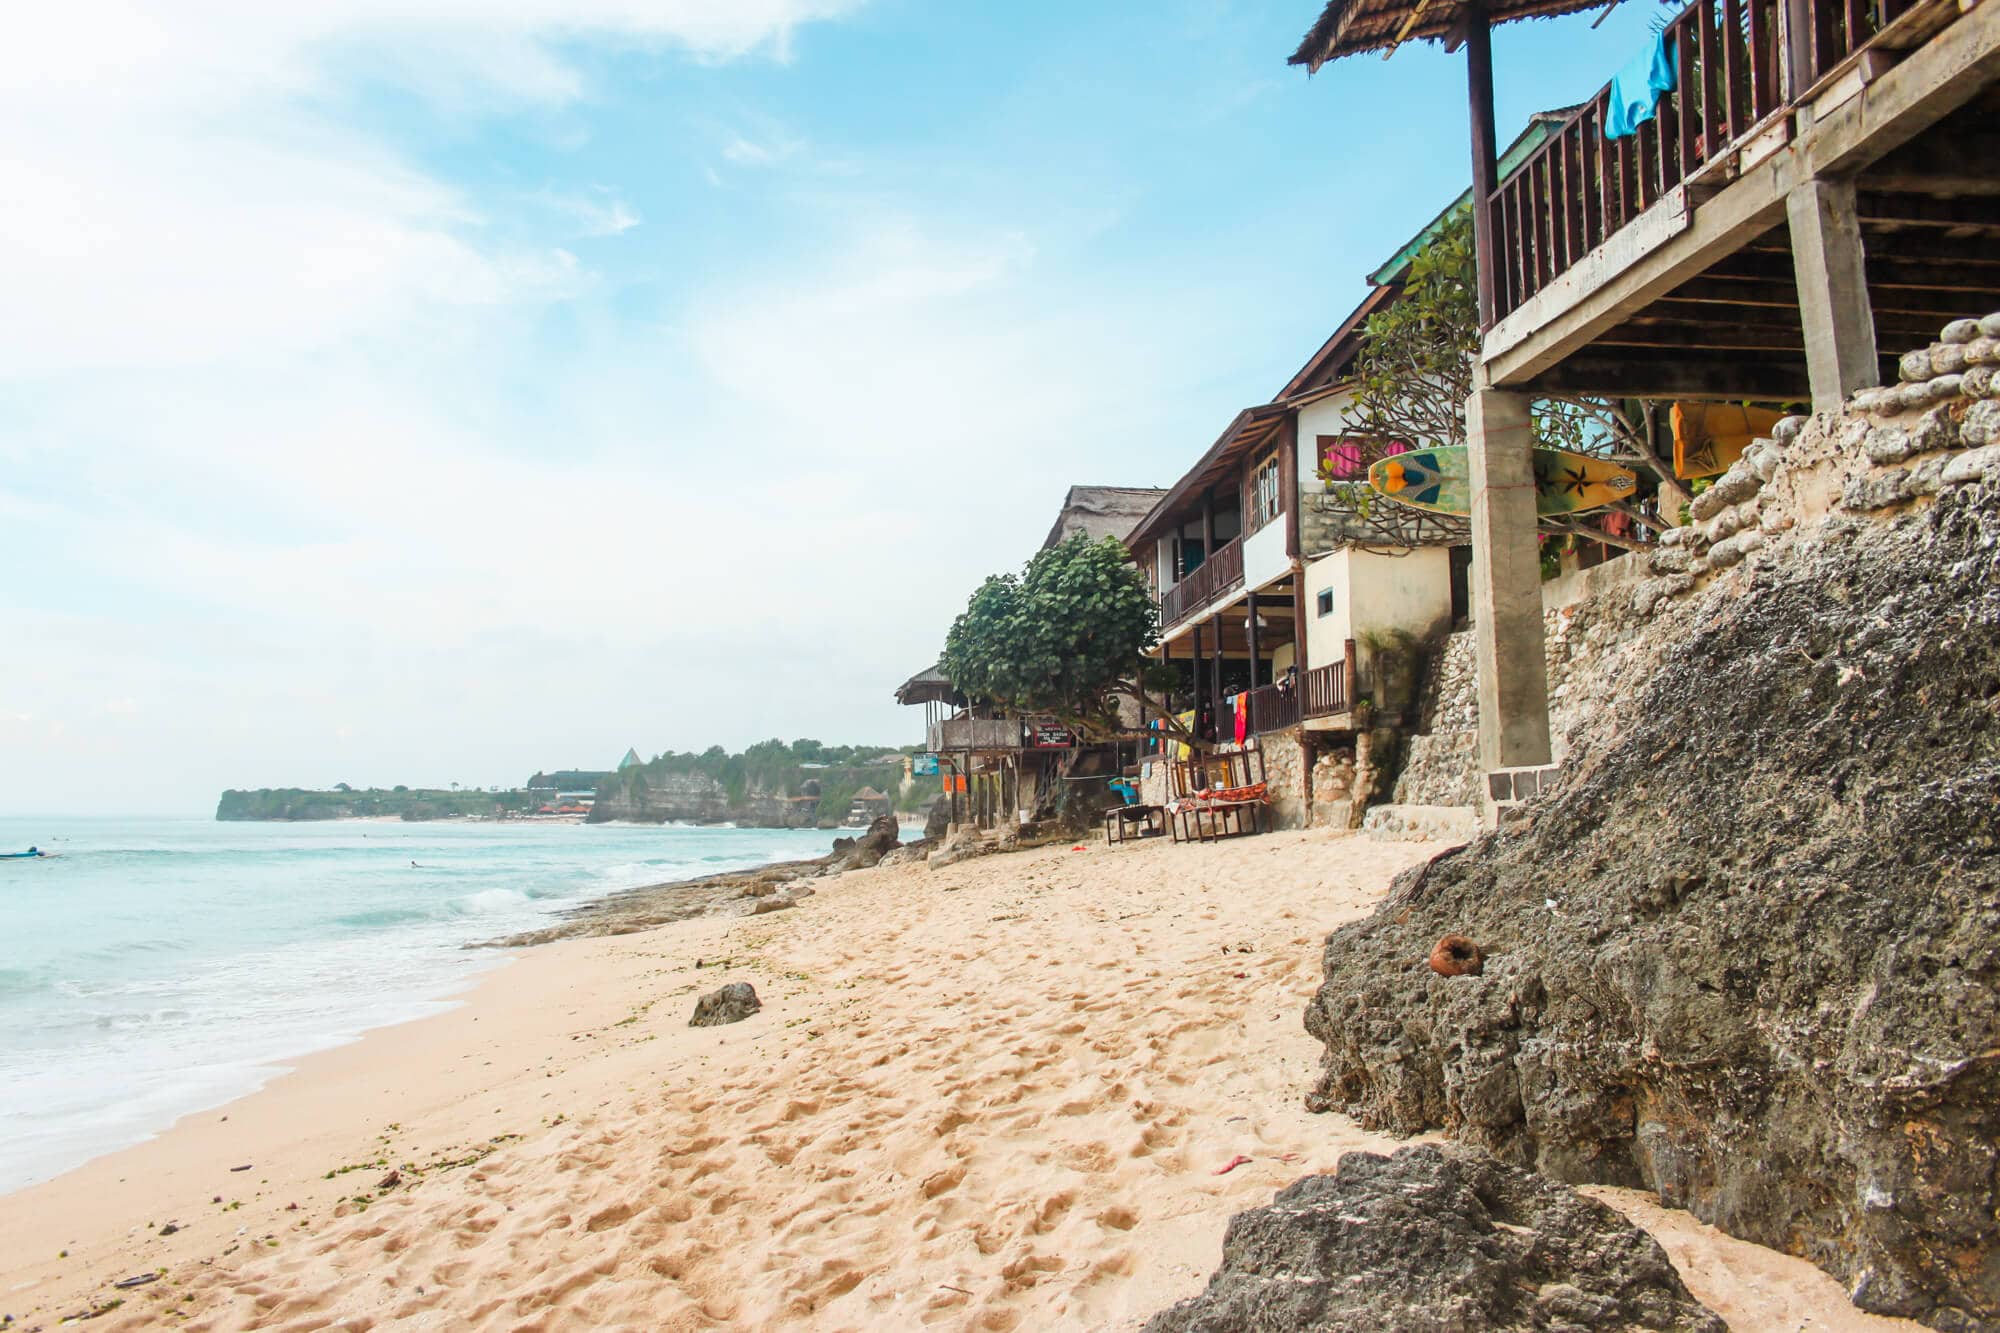 Пляжи бали - лучшие пляжи бали, пляжи западного, восточного и северного берега, фото - помощник путешественника